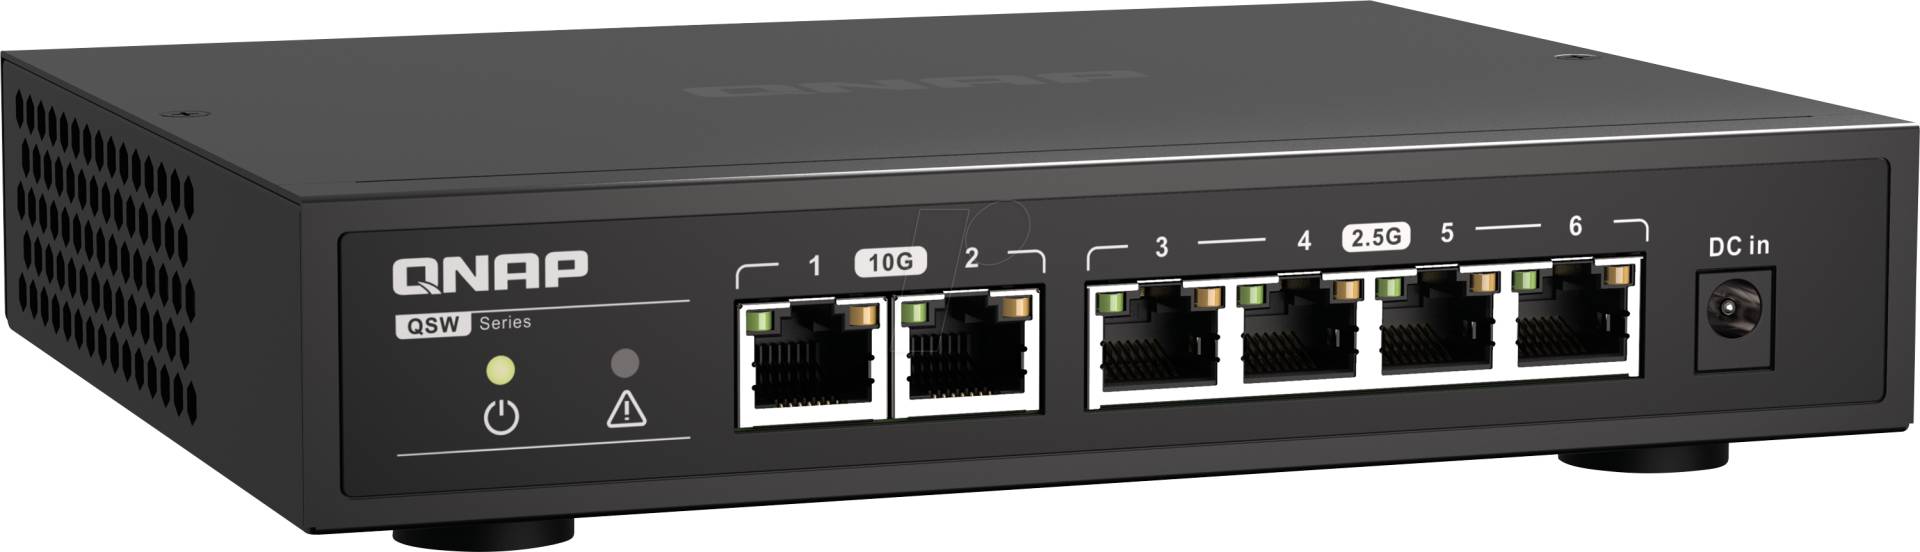 QNAP QSW-2104-2T - Switch, 6-Port, 2,5 Gigabit Ethernet von QNAP